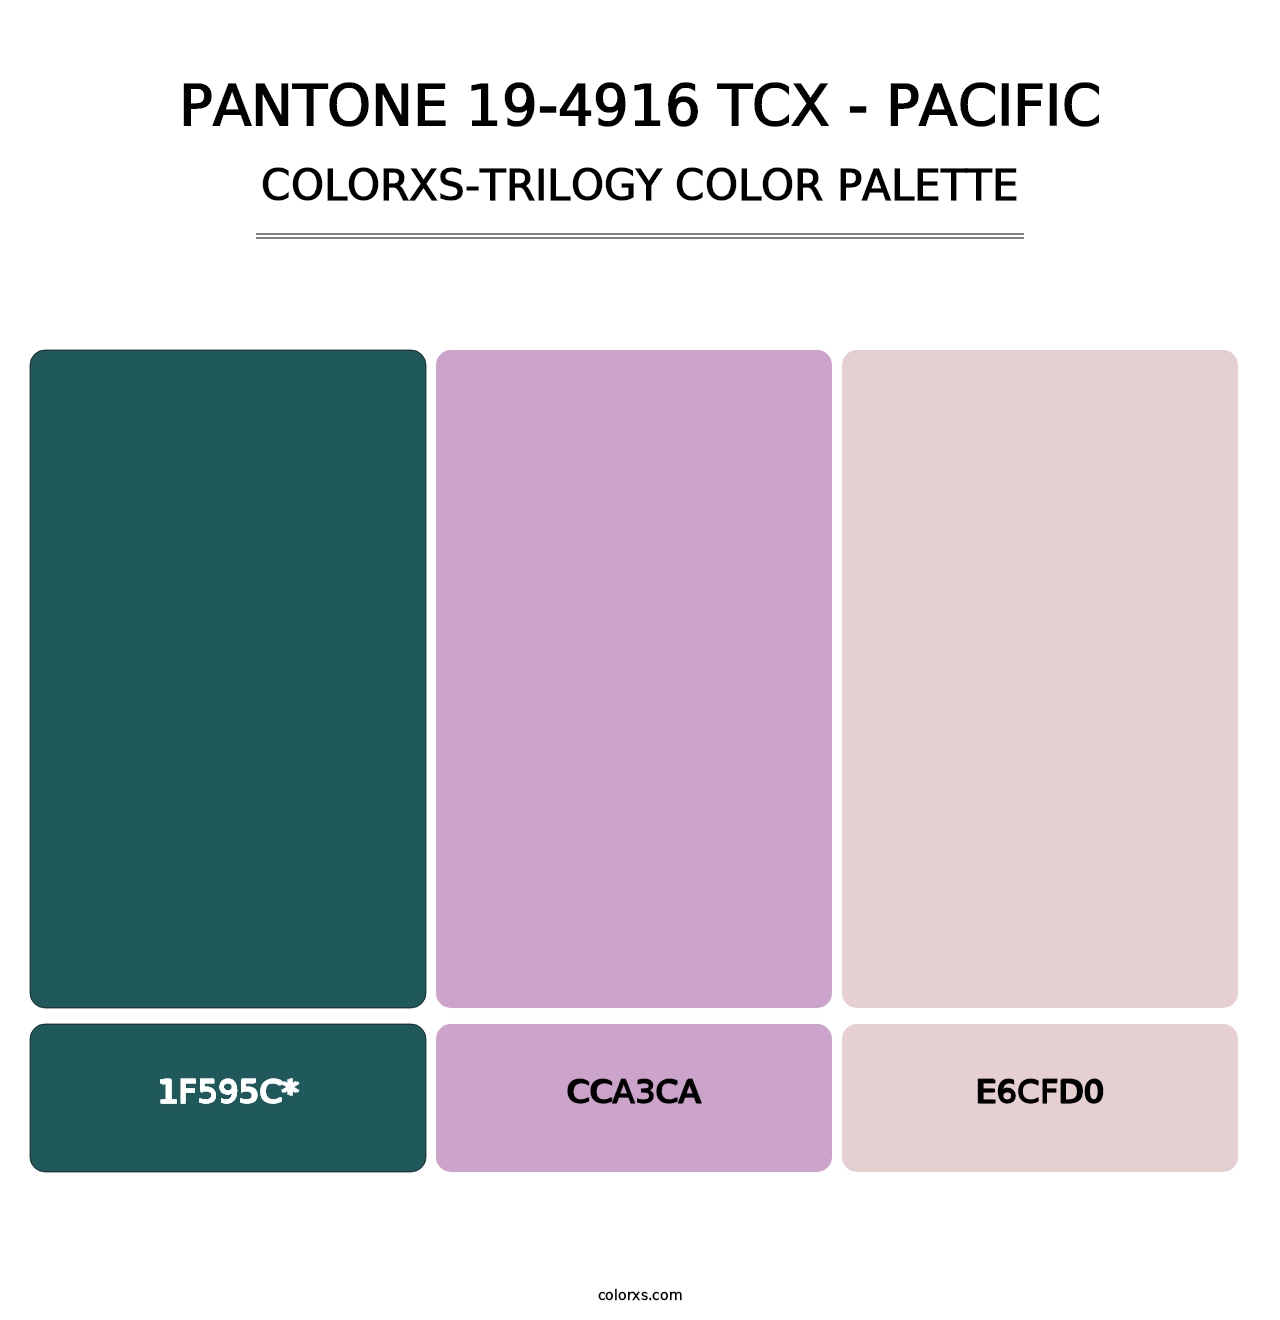 PANTONE 19-4916 TCX - Pacific - Colorxs Trilogy Palette